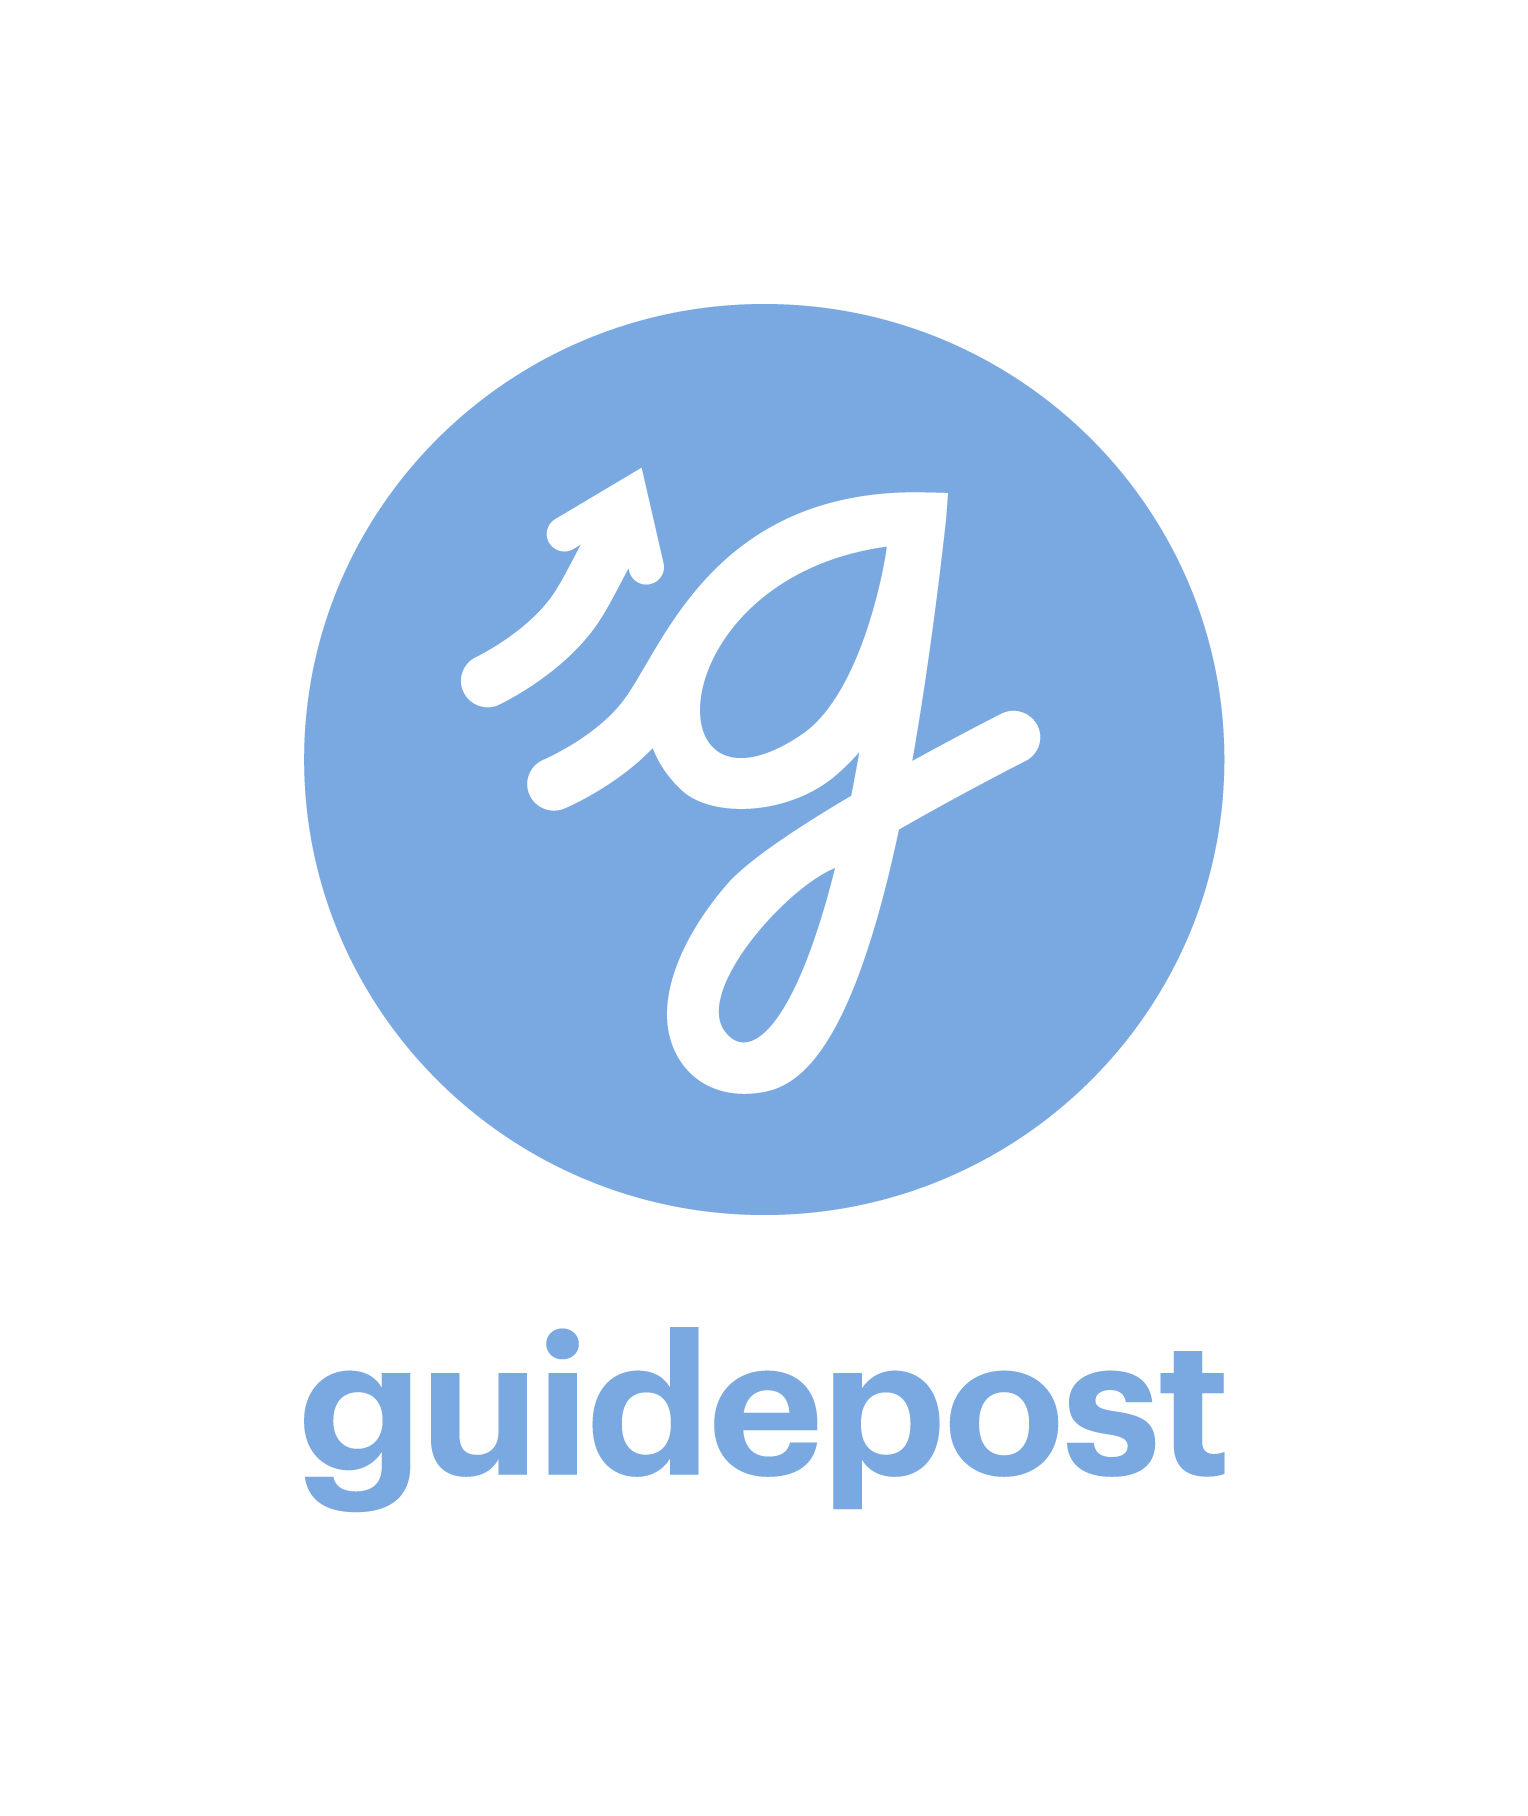 guidepost_logo_lockup_stacked_azure_rgb.png